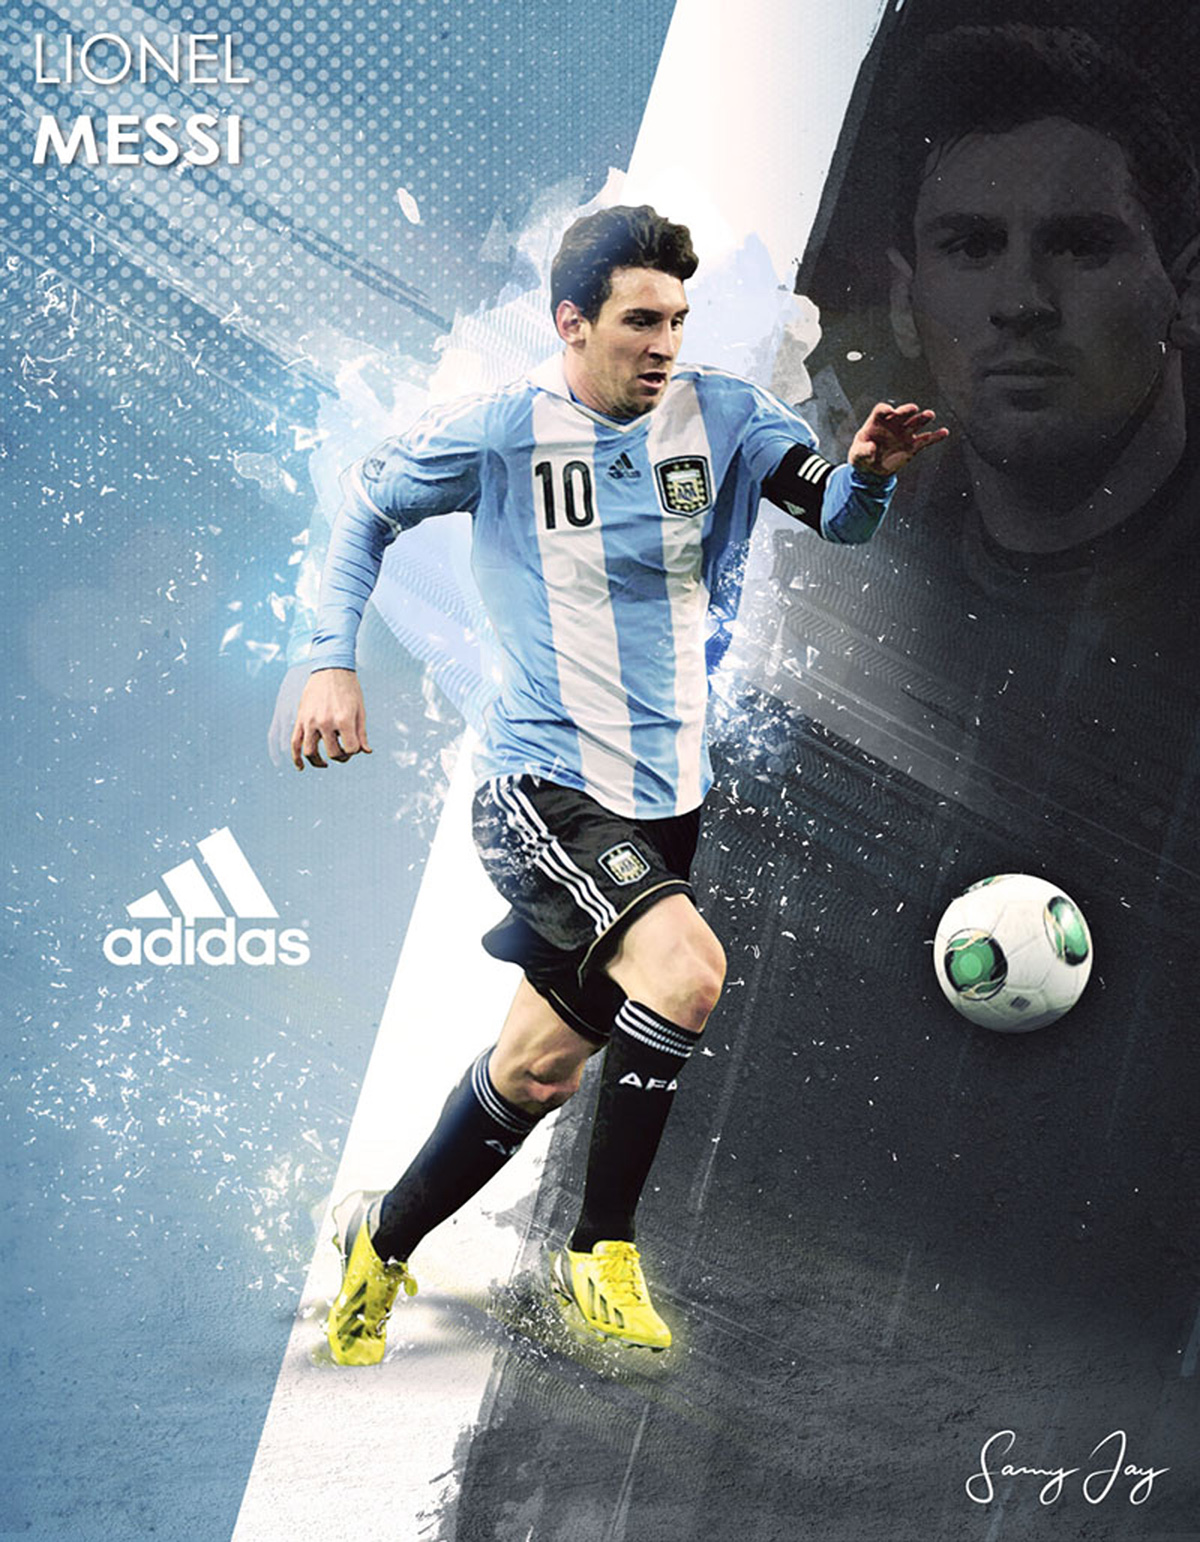 Messi kí hợp đồng trọn đời với Adidas